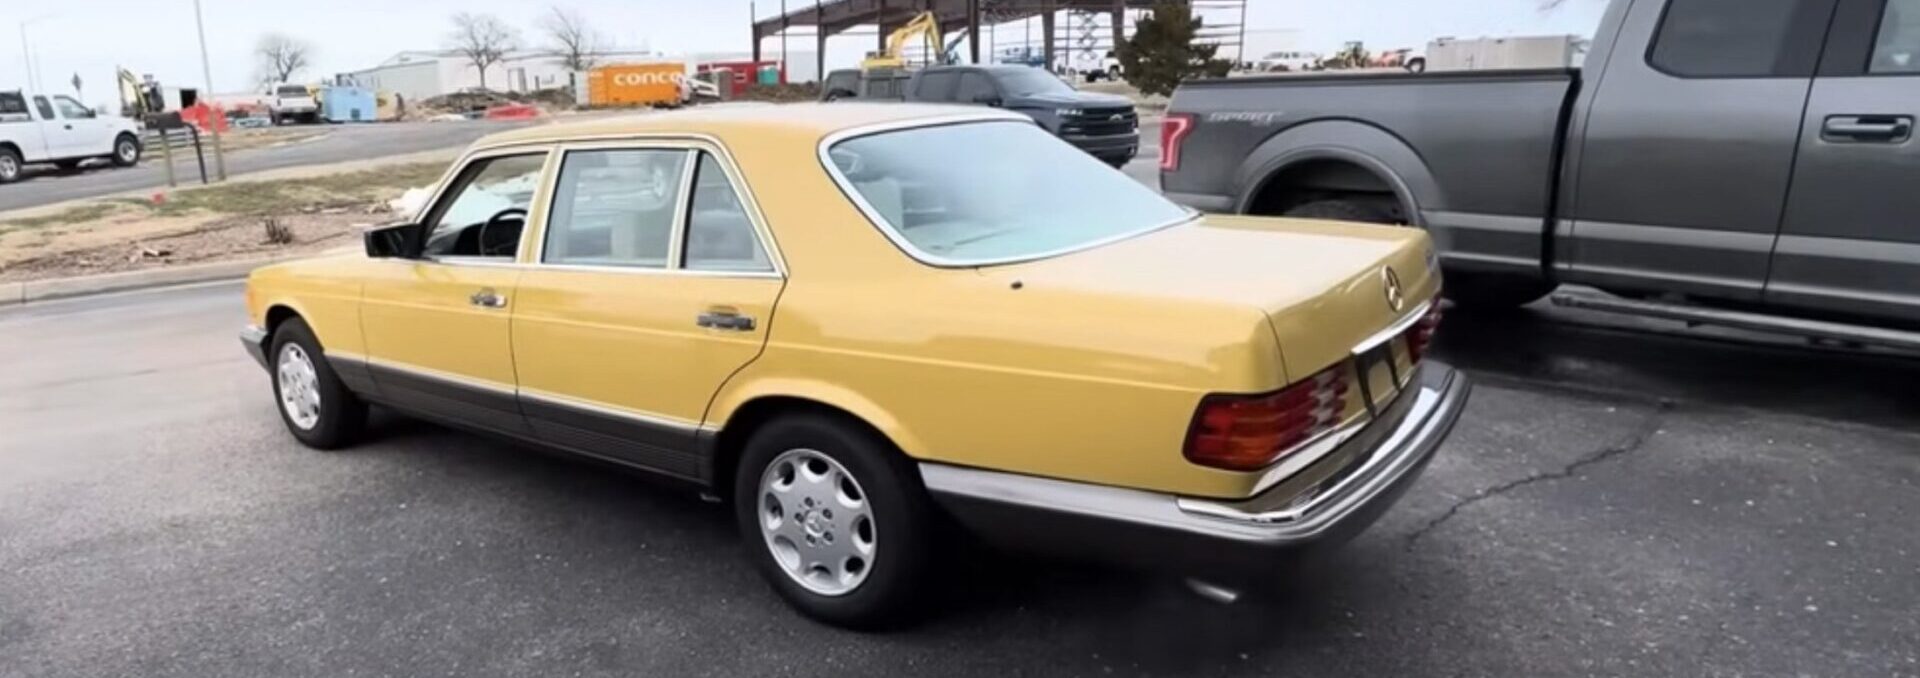 Mercedes 500SEL 1985 года в бананово-желтом цвете имеет специальную надпись внутри багажника